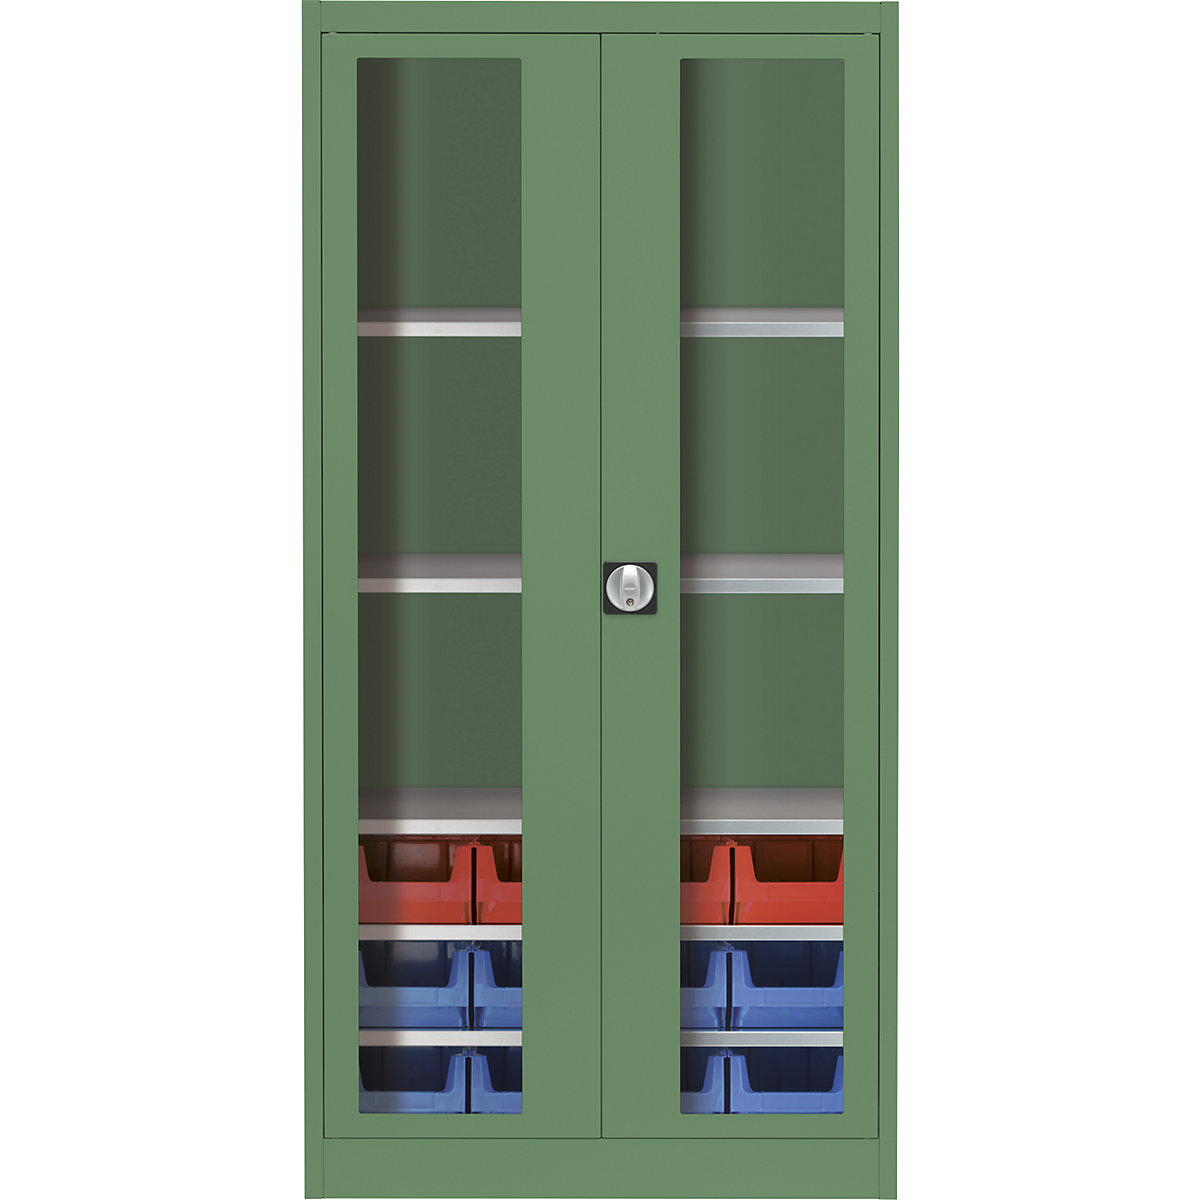 Skriňa s krídlovými dverami s priehľadným okienkom – mauser, s 12 prepravkami s viditeľným obsahom, rezedová zelená-7